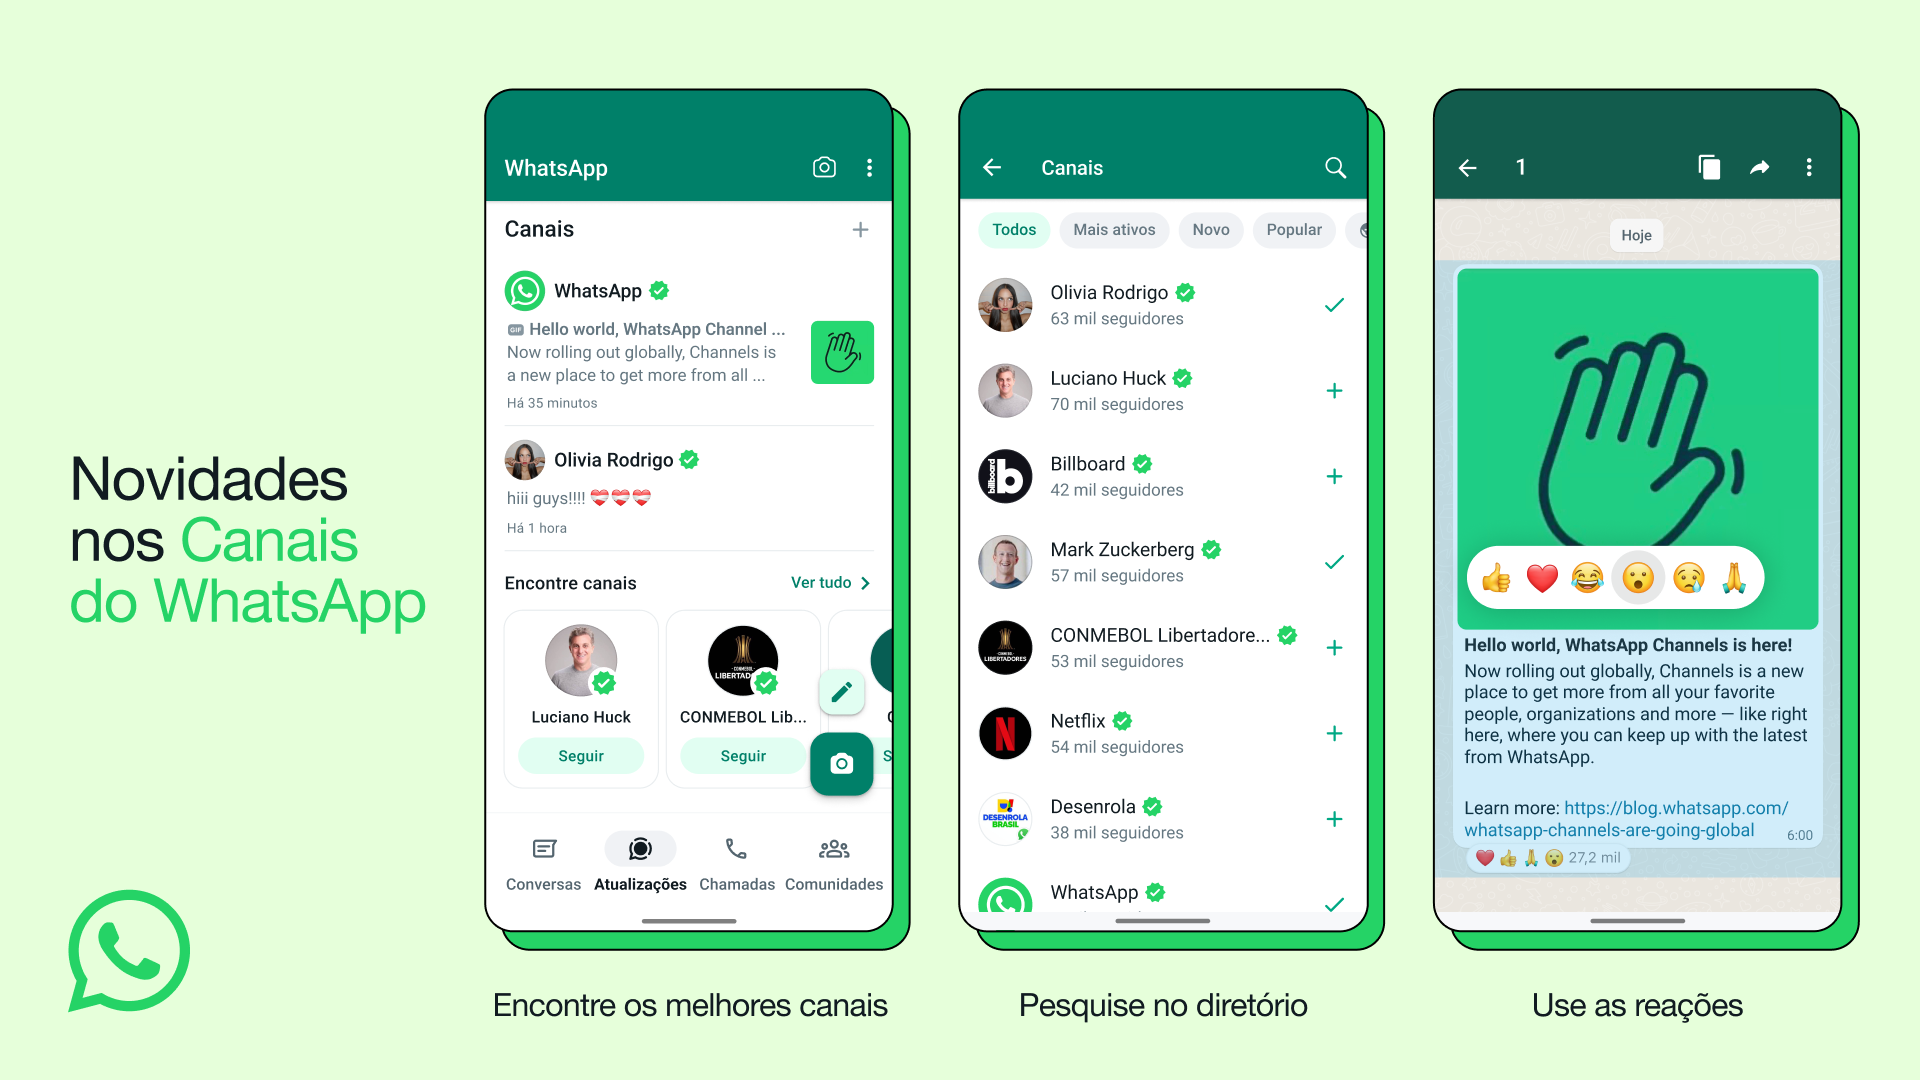 Canais do WhatsApp foram lançados no Brasil em setembro (Fonte: Meta)